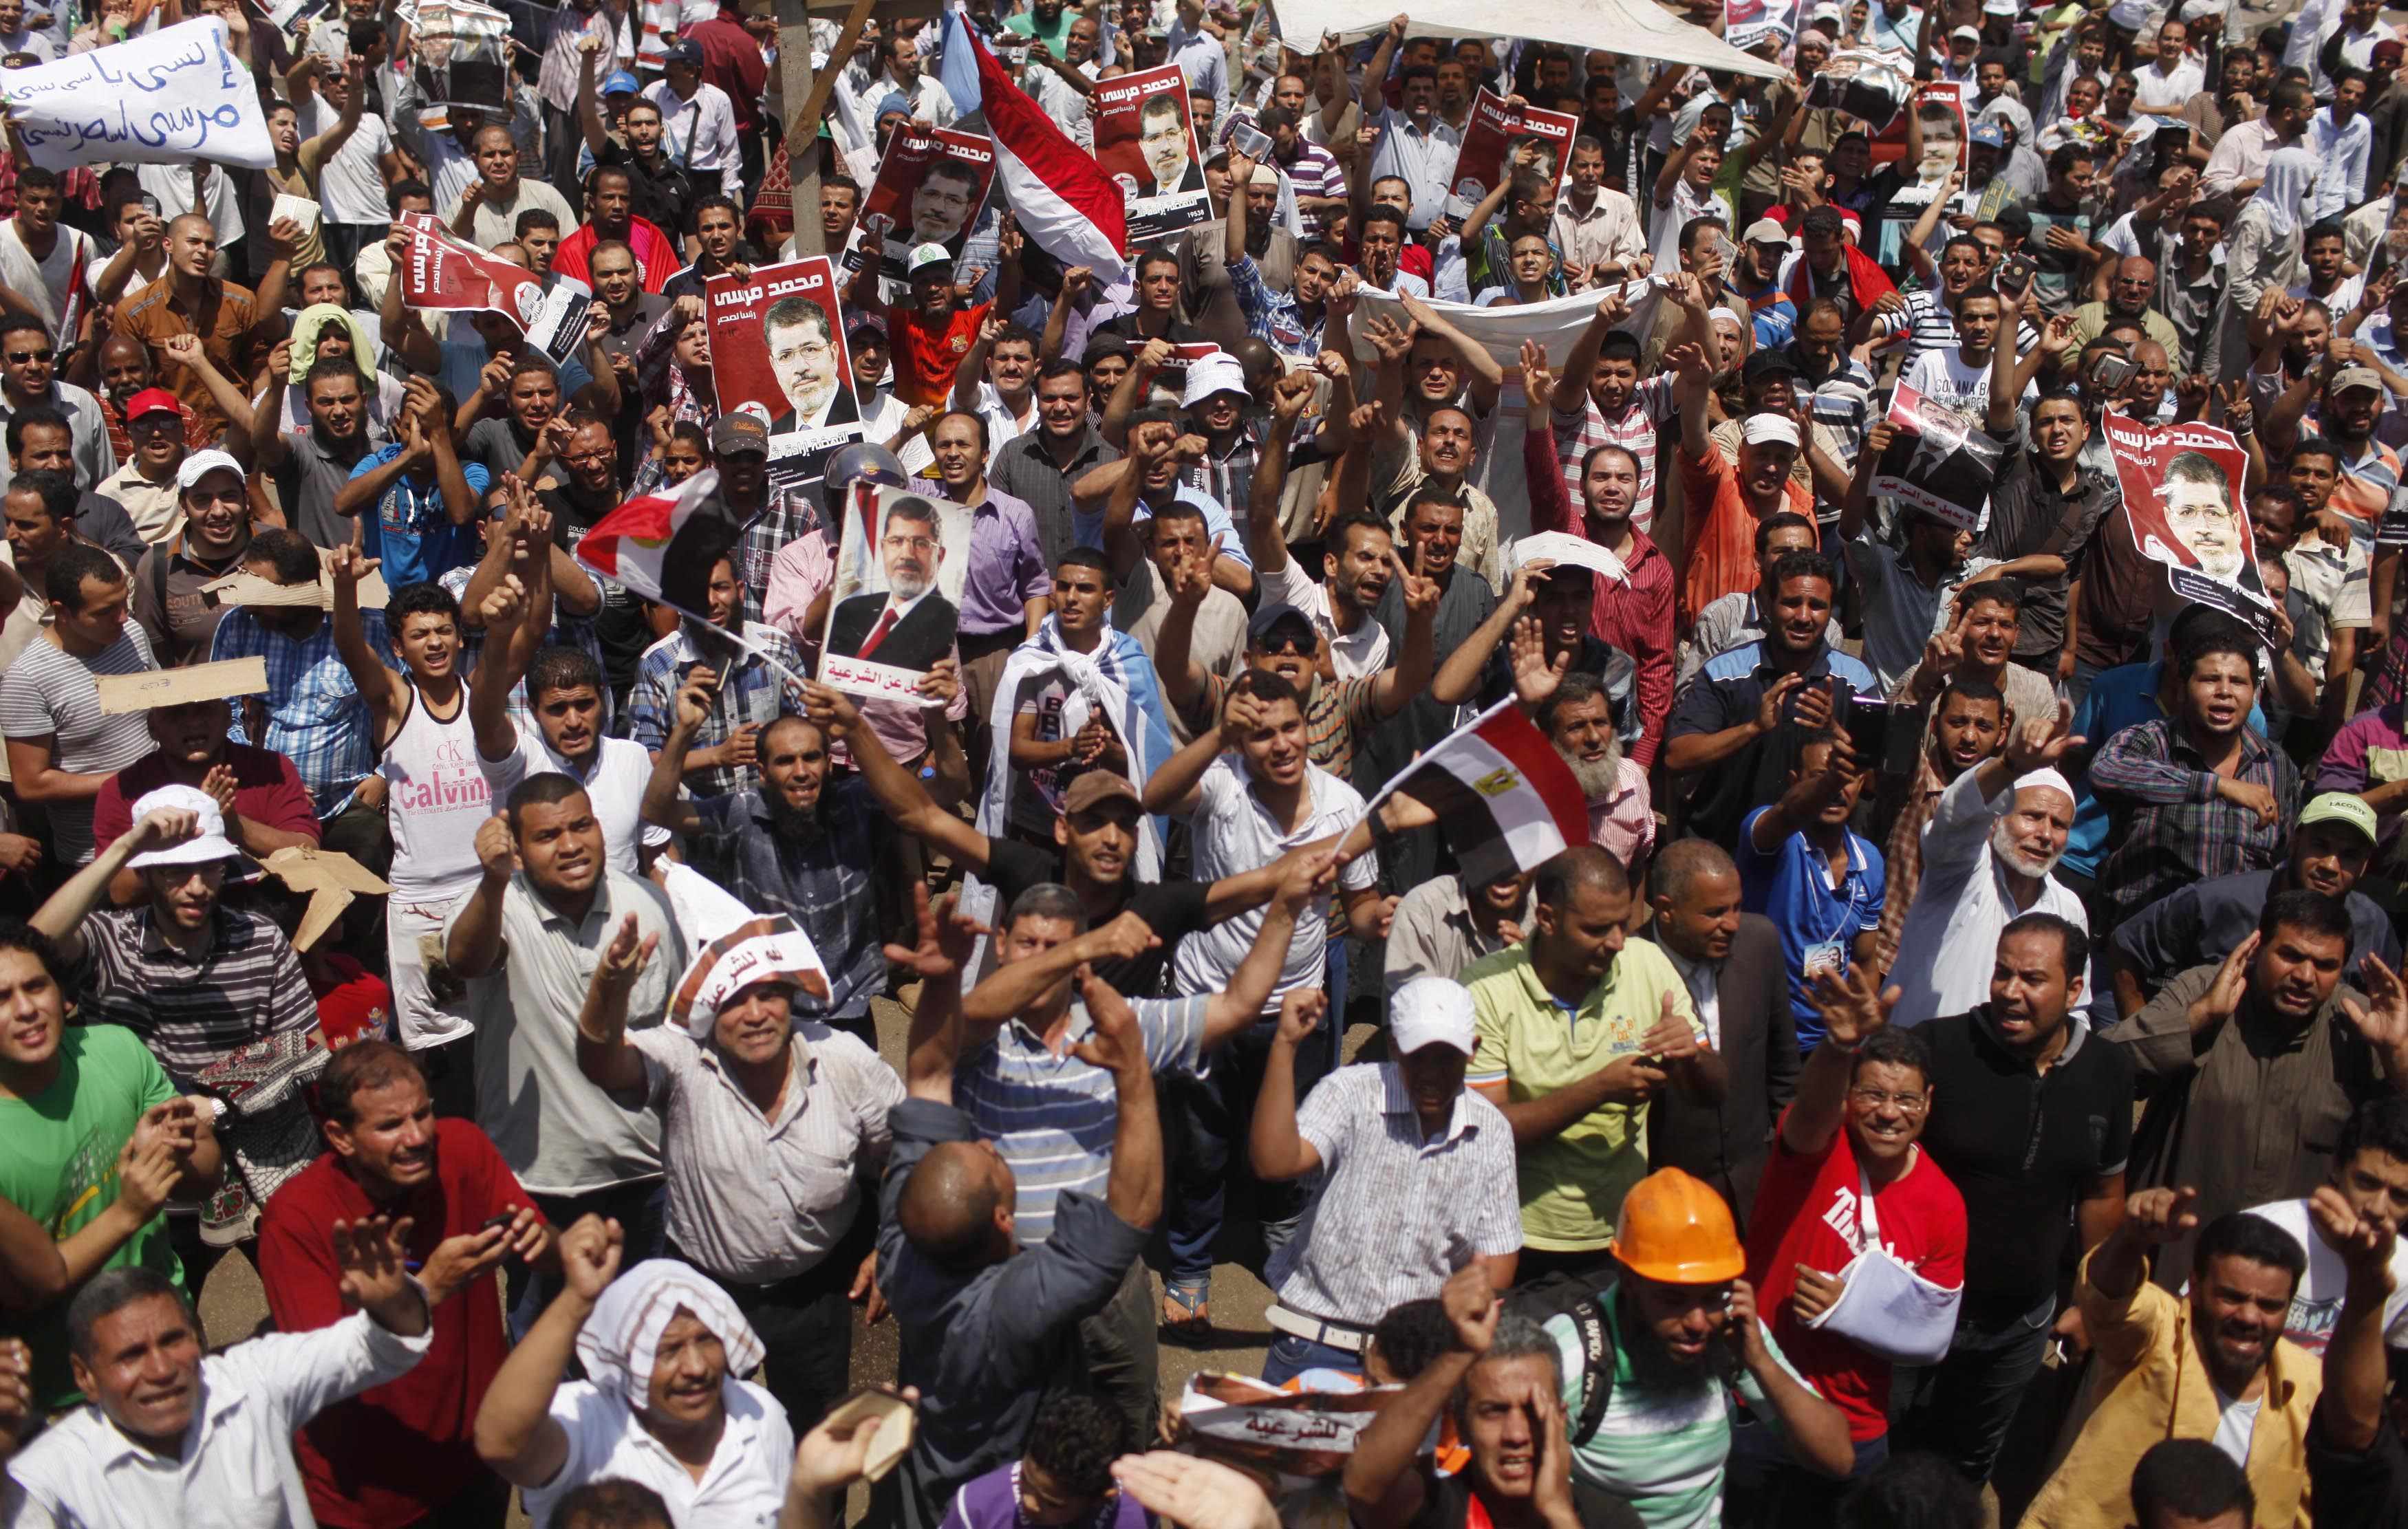 Αίγυπτος: Σε κατάσταση έκτακτης ανάγκης Νότιο Σινά και Σουέζ – Παραιτήθηκε ο γενικός εισαγγελέας (ΦΩΤΟ)